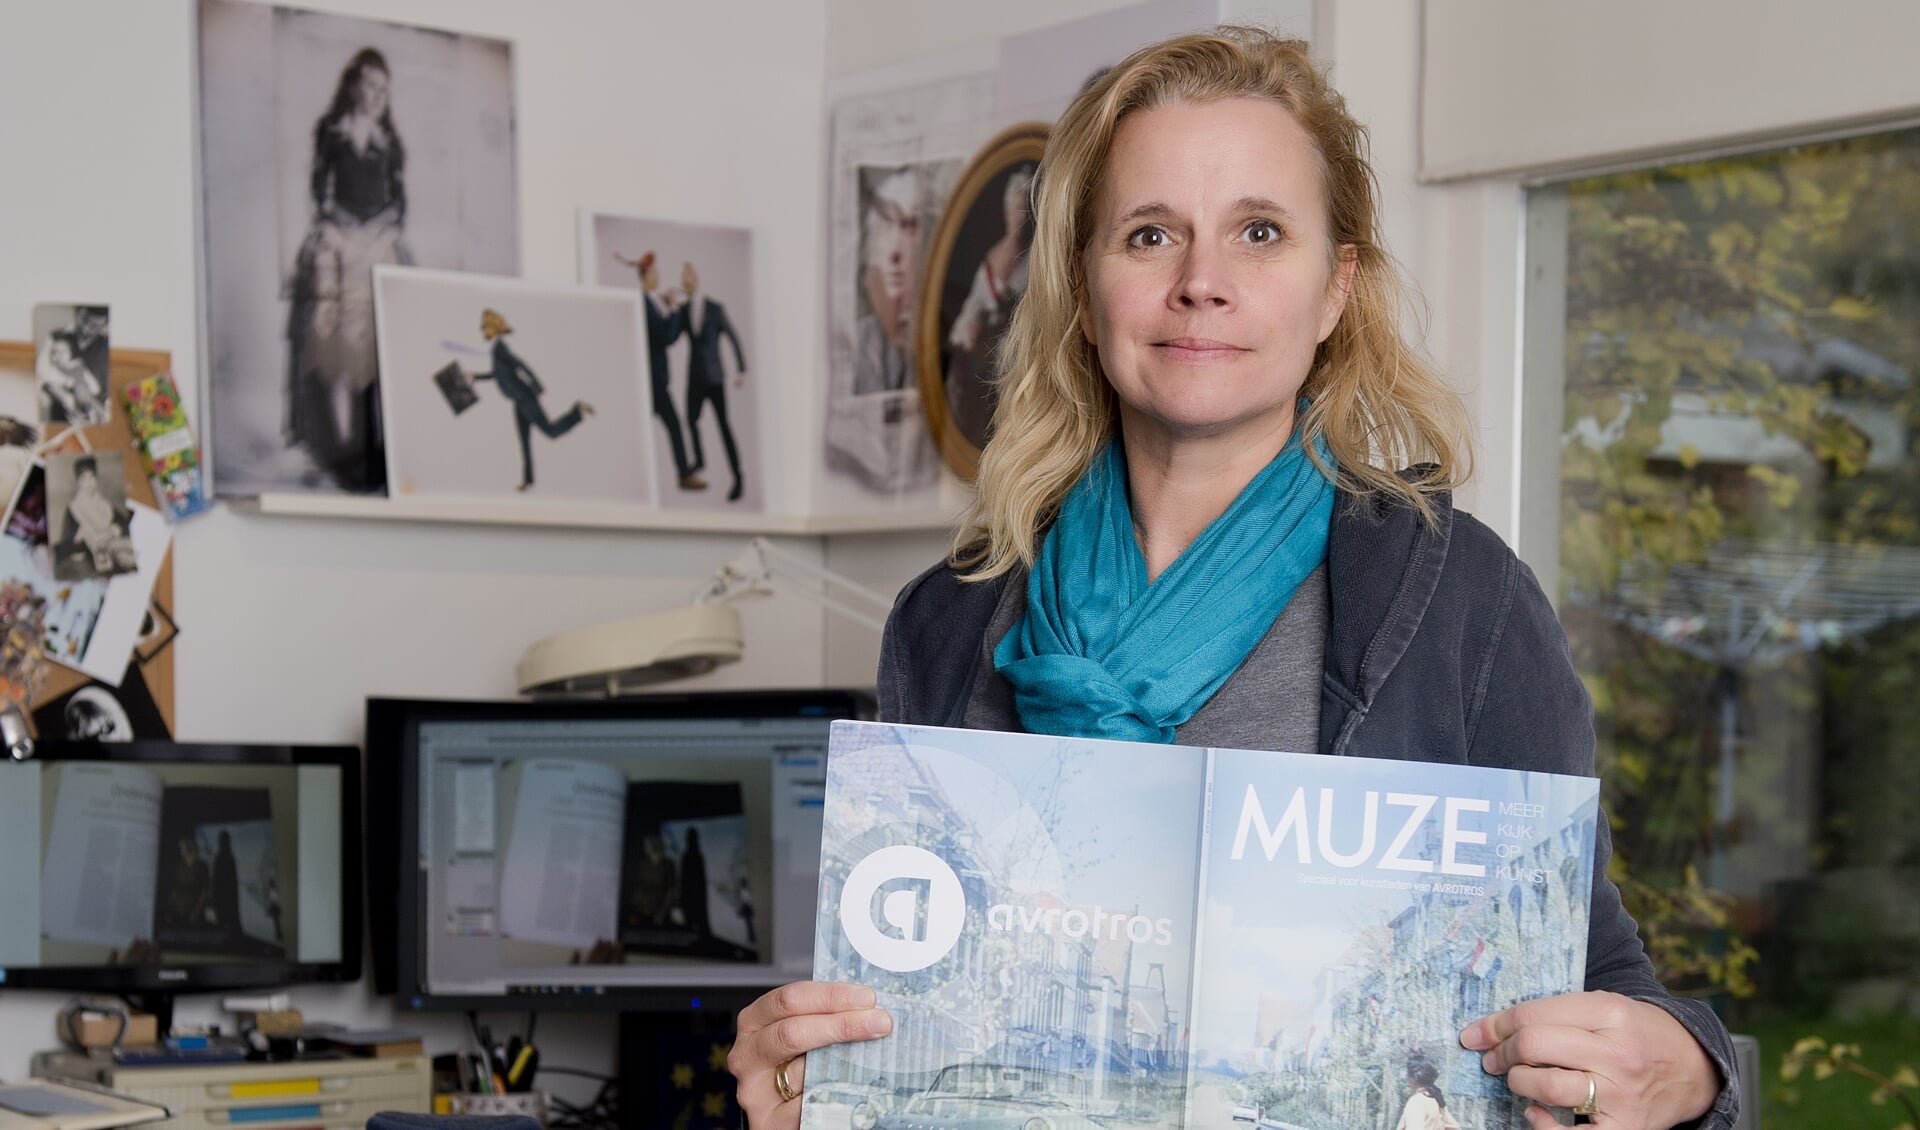 Kunstenares Nadja Willems met haar Cover voor de Muze